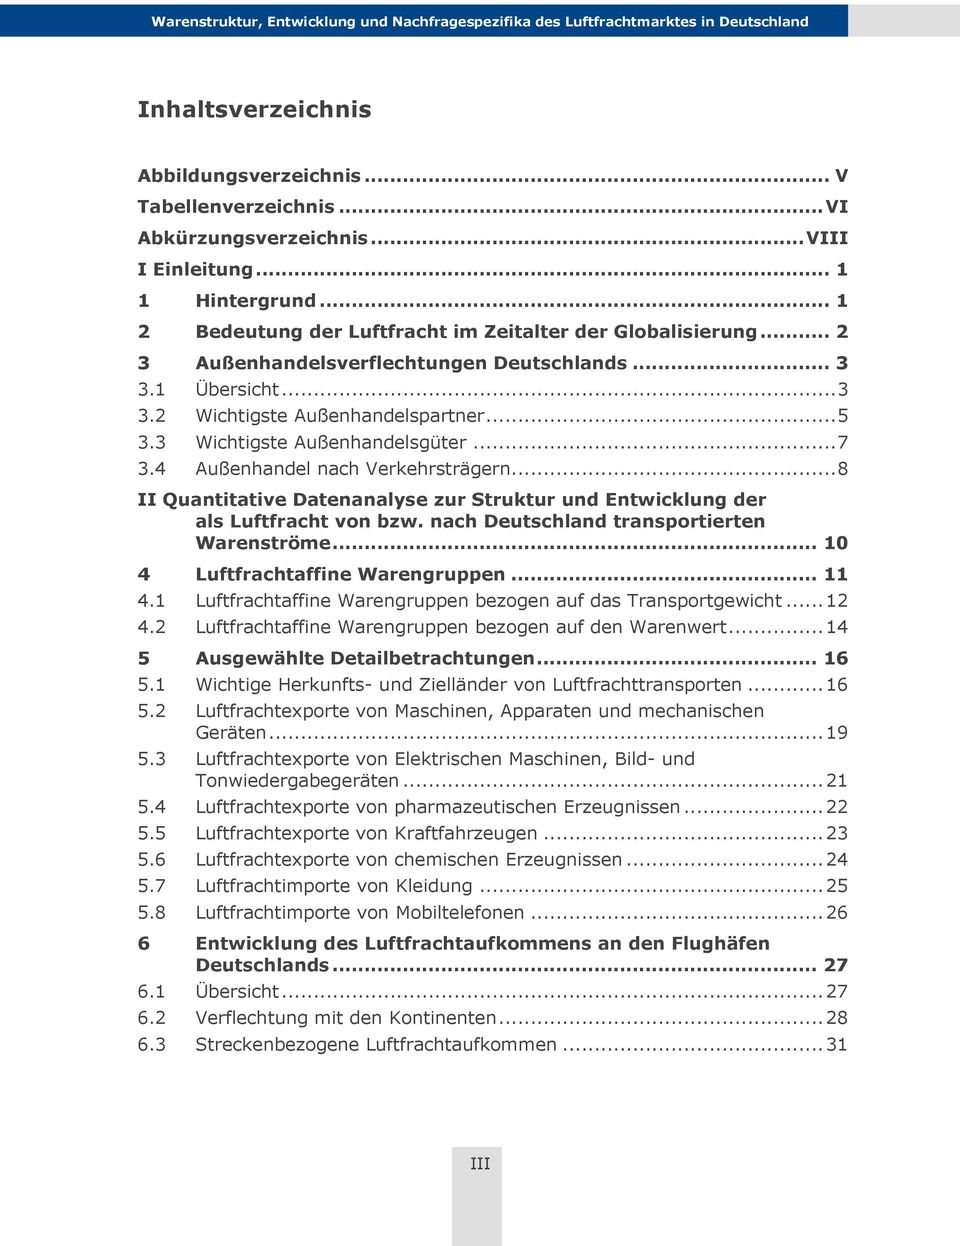 .. 8 II Quantitative Datenanalyse zur Struktur und Entwicklung der als Luftfracht von bzw. nach Deutschland transportierten Warenströme... 10 4 Luftfrachtaffine Warengruppen... 11 4.